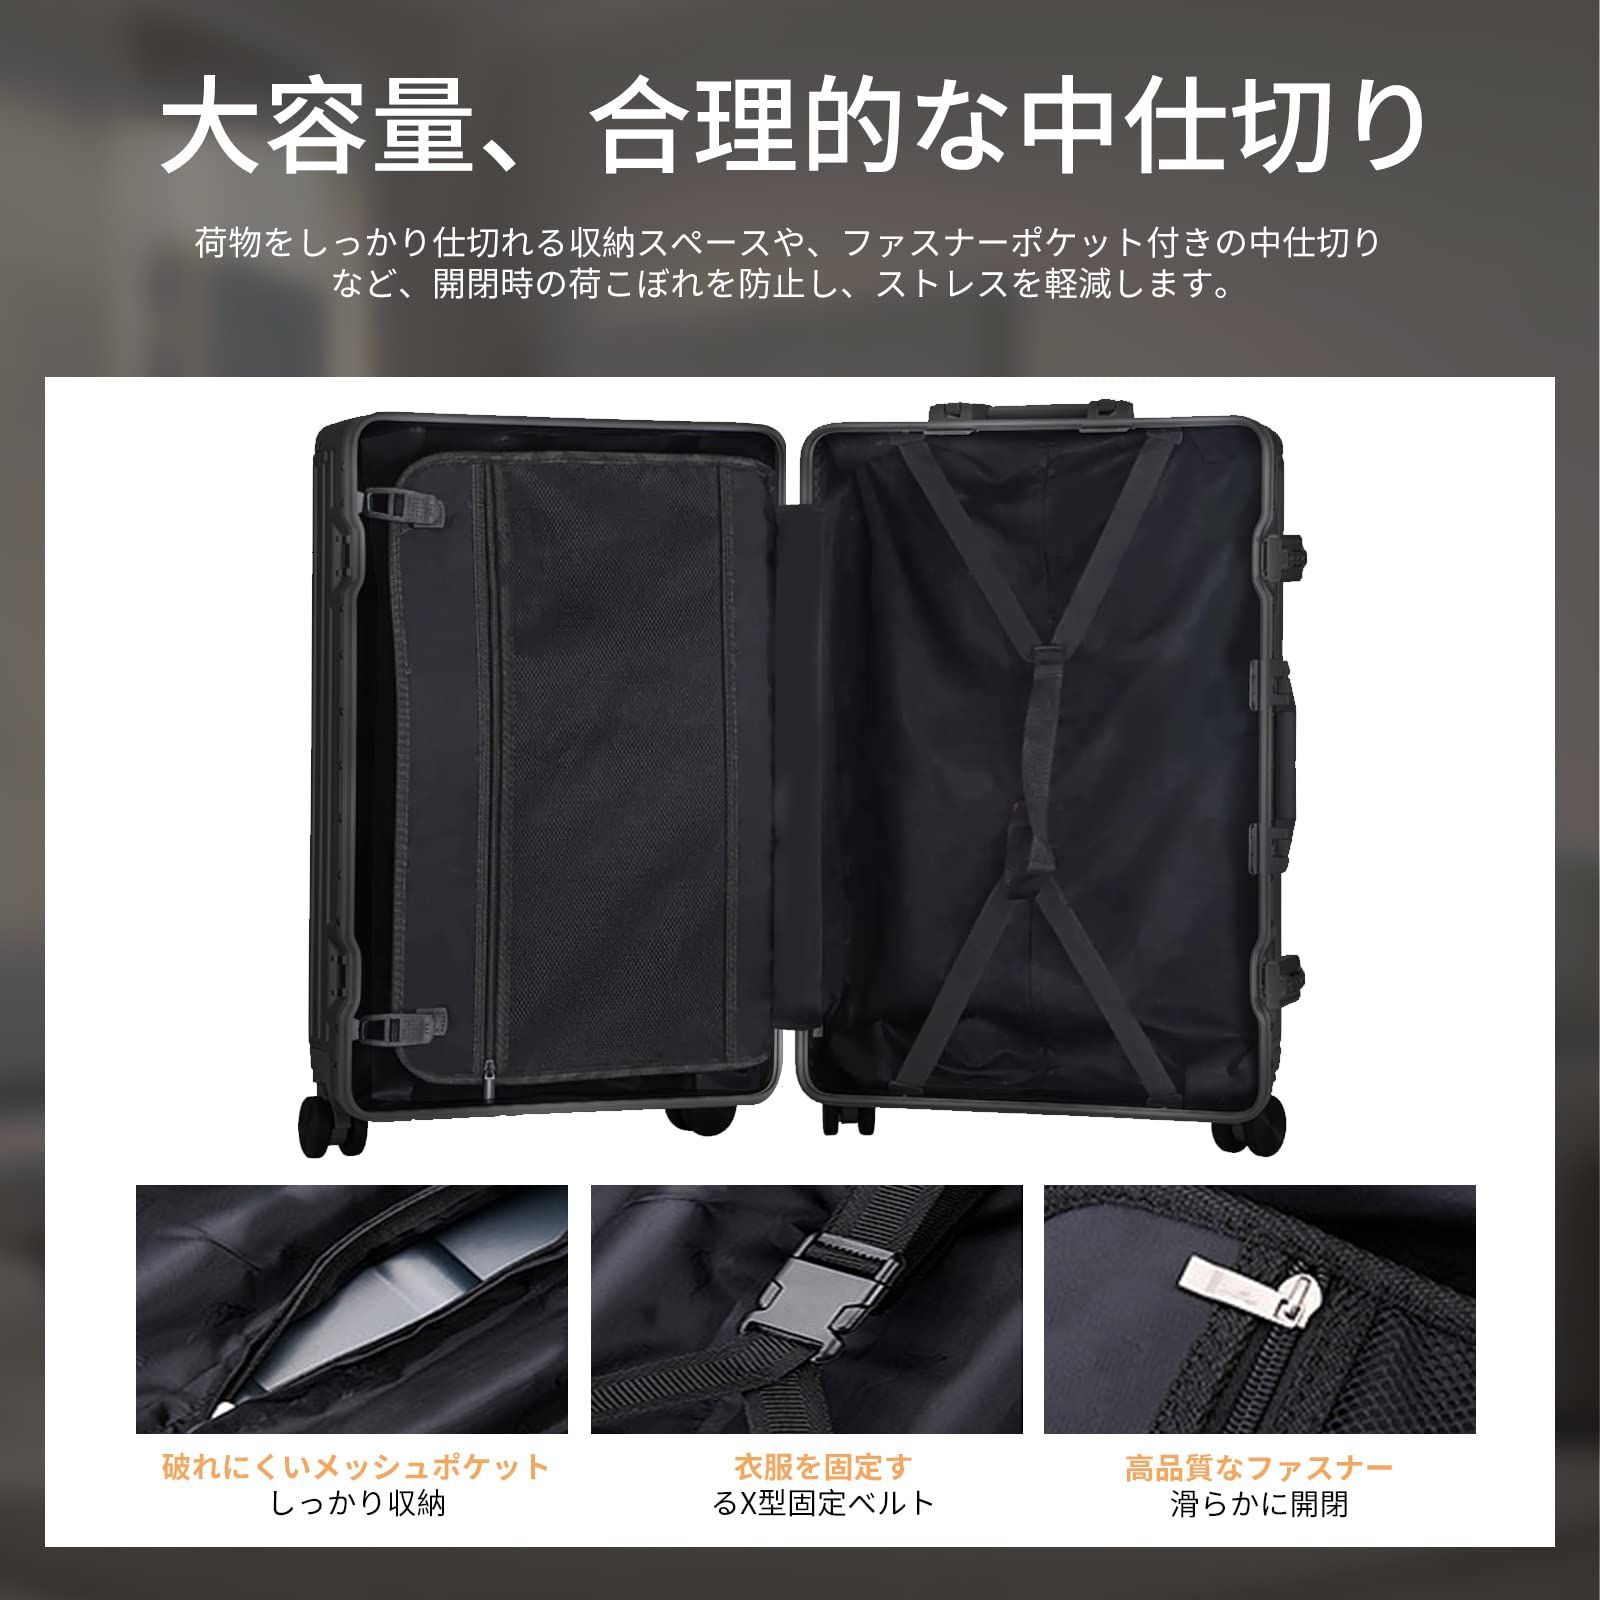 特価商品】フレームタイプ スーツケース キャリーバッグ ケース+